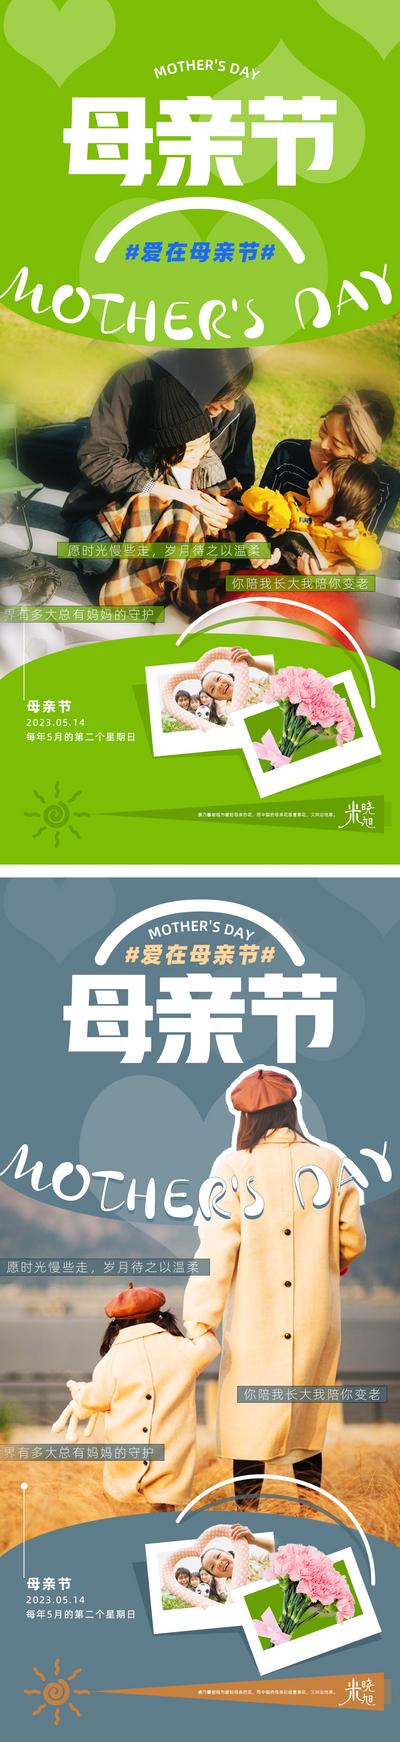 南门网 广告 海报 人物 母亲节 系列 亲子 草地